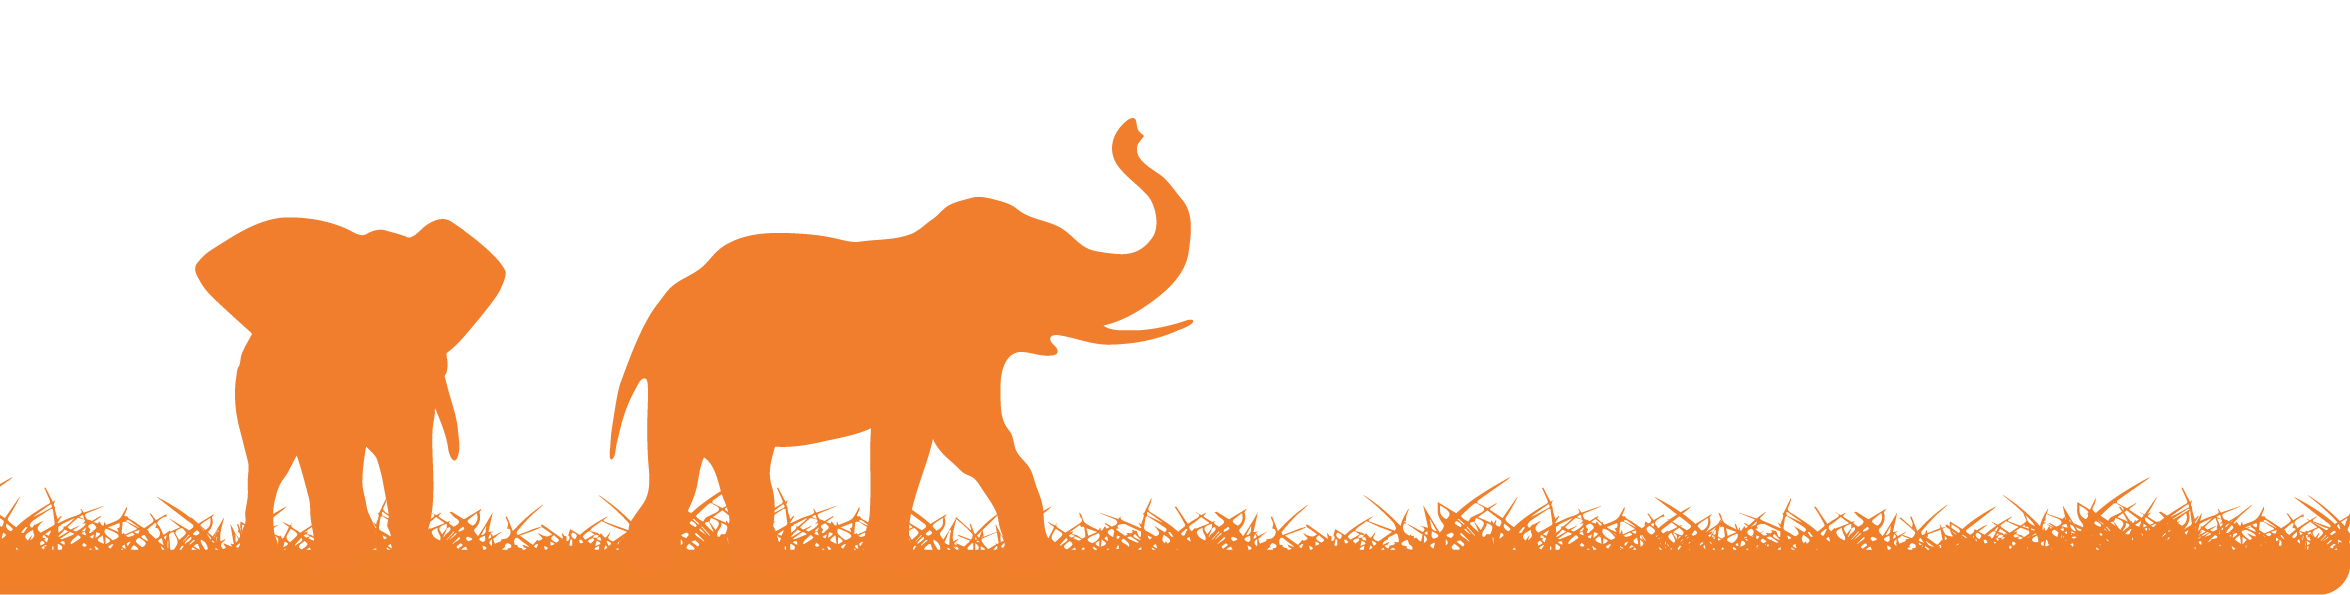 Ikoner af elefanter